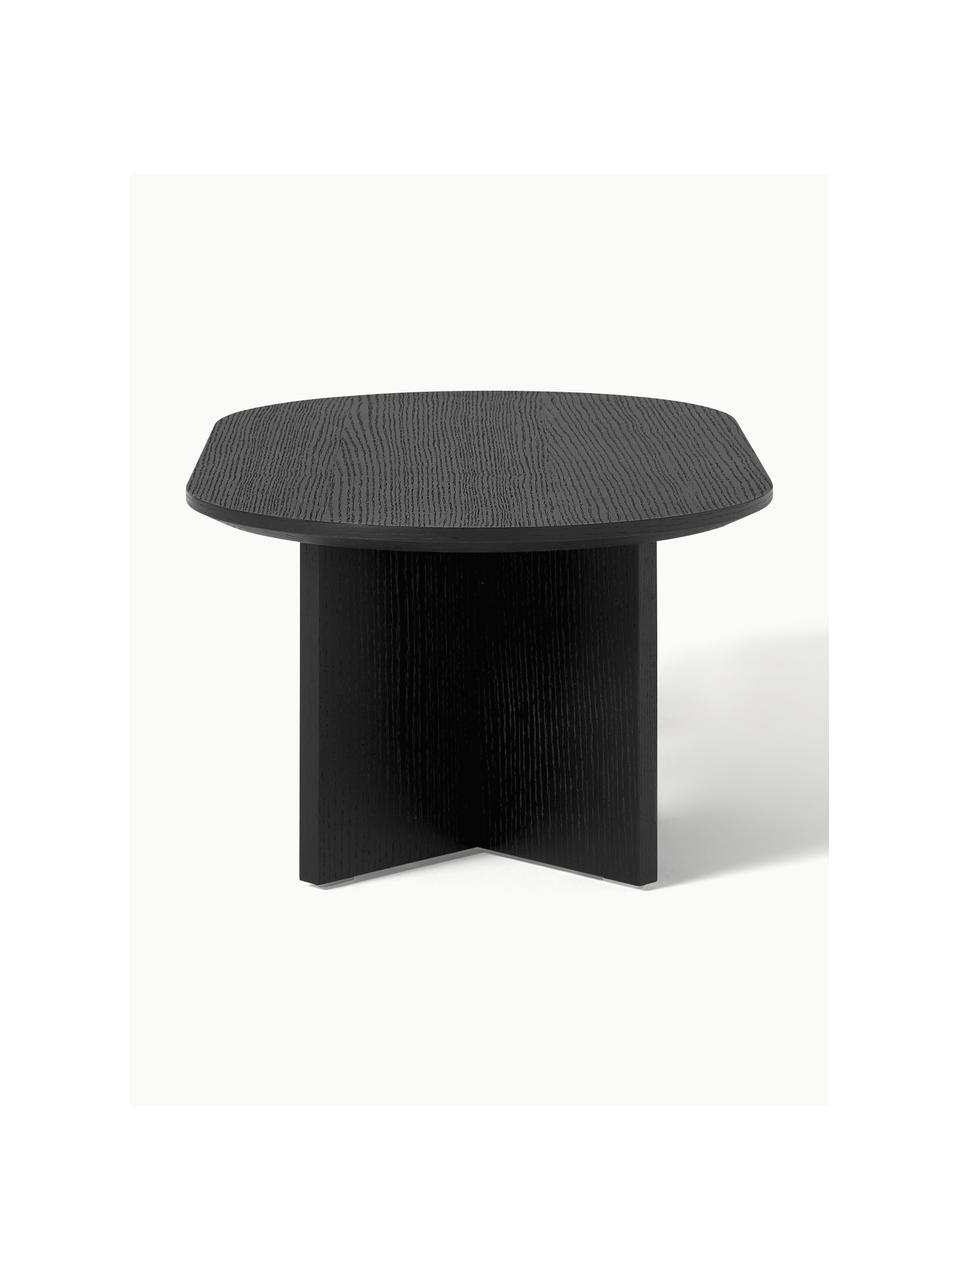 Oválny drevený konferenčný stolík Toni, MDF-doska strednej hustoty s dyhou z orechového dreva, lakované

Tento produkt je vyrobený z trvalo udržateľného dreva s certifikátom FSC®., Čierna, Š 100 x D 55 cm